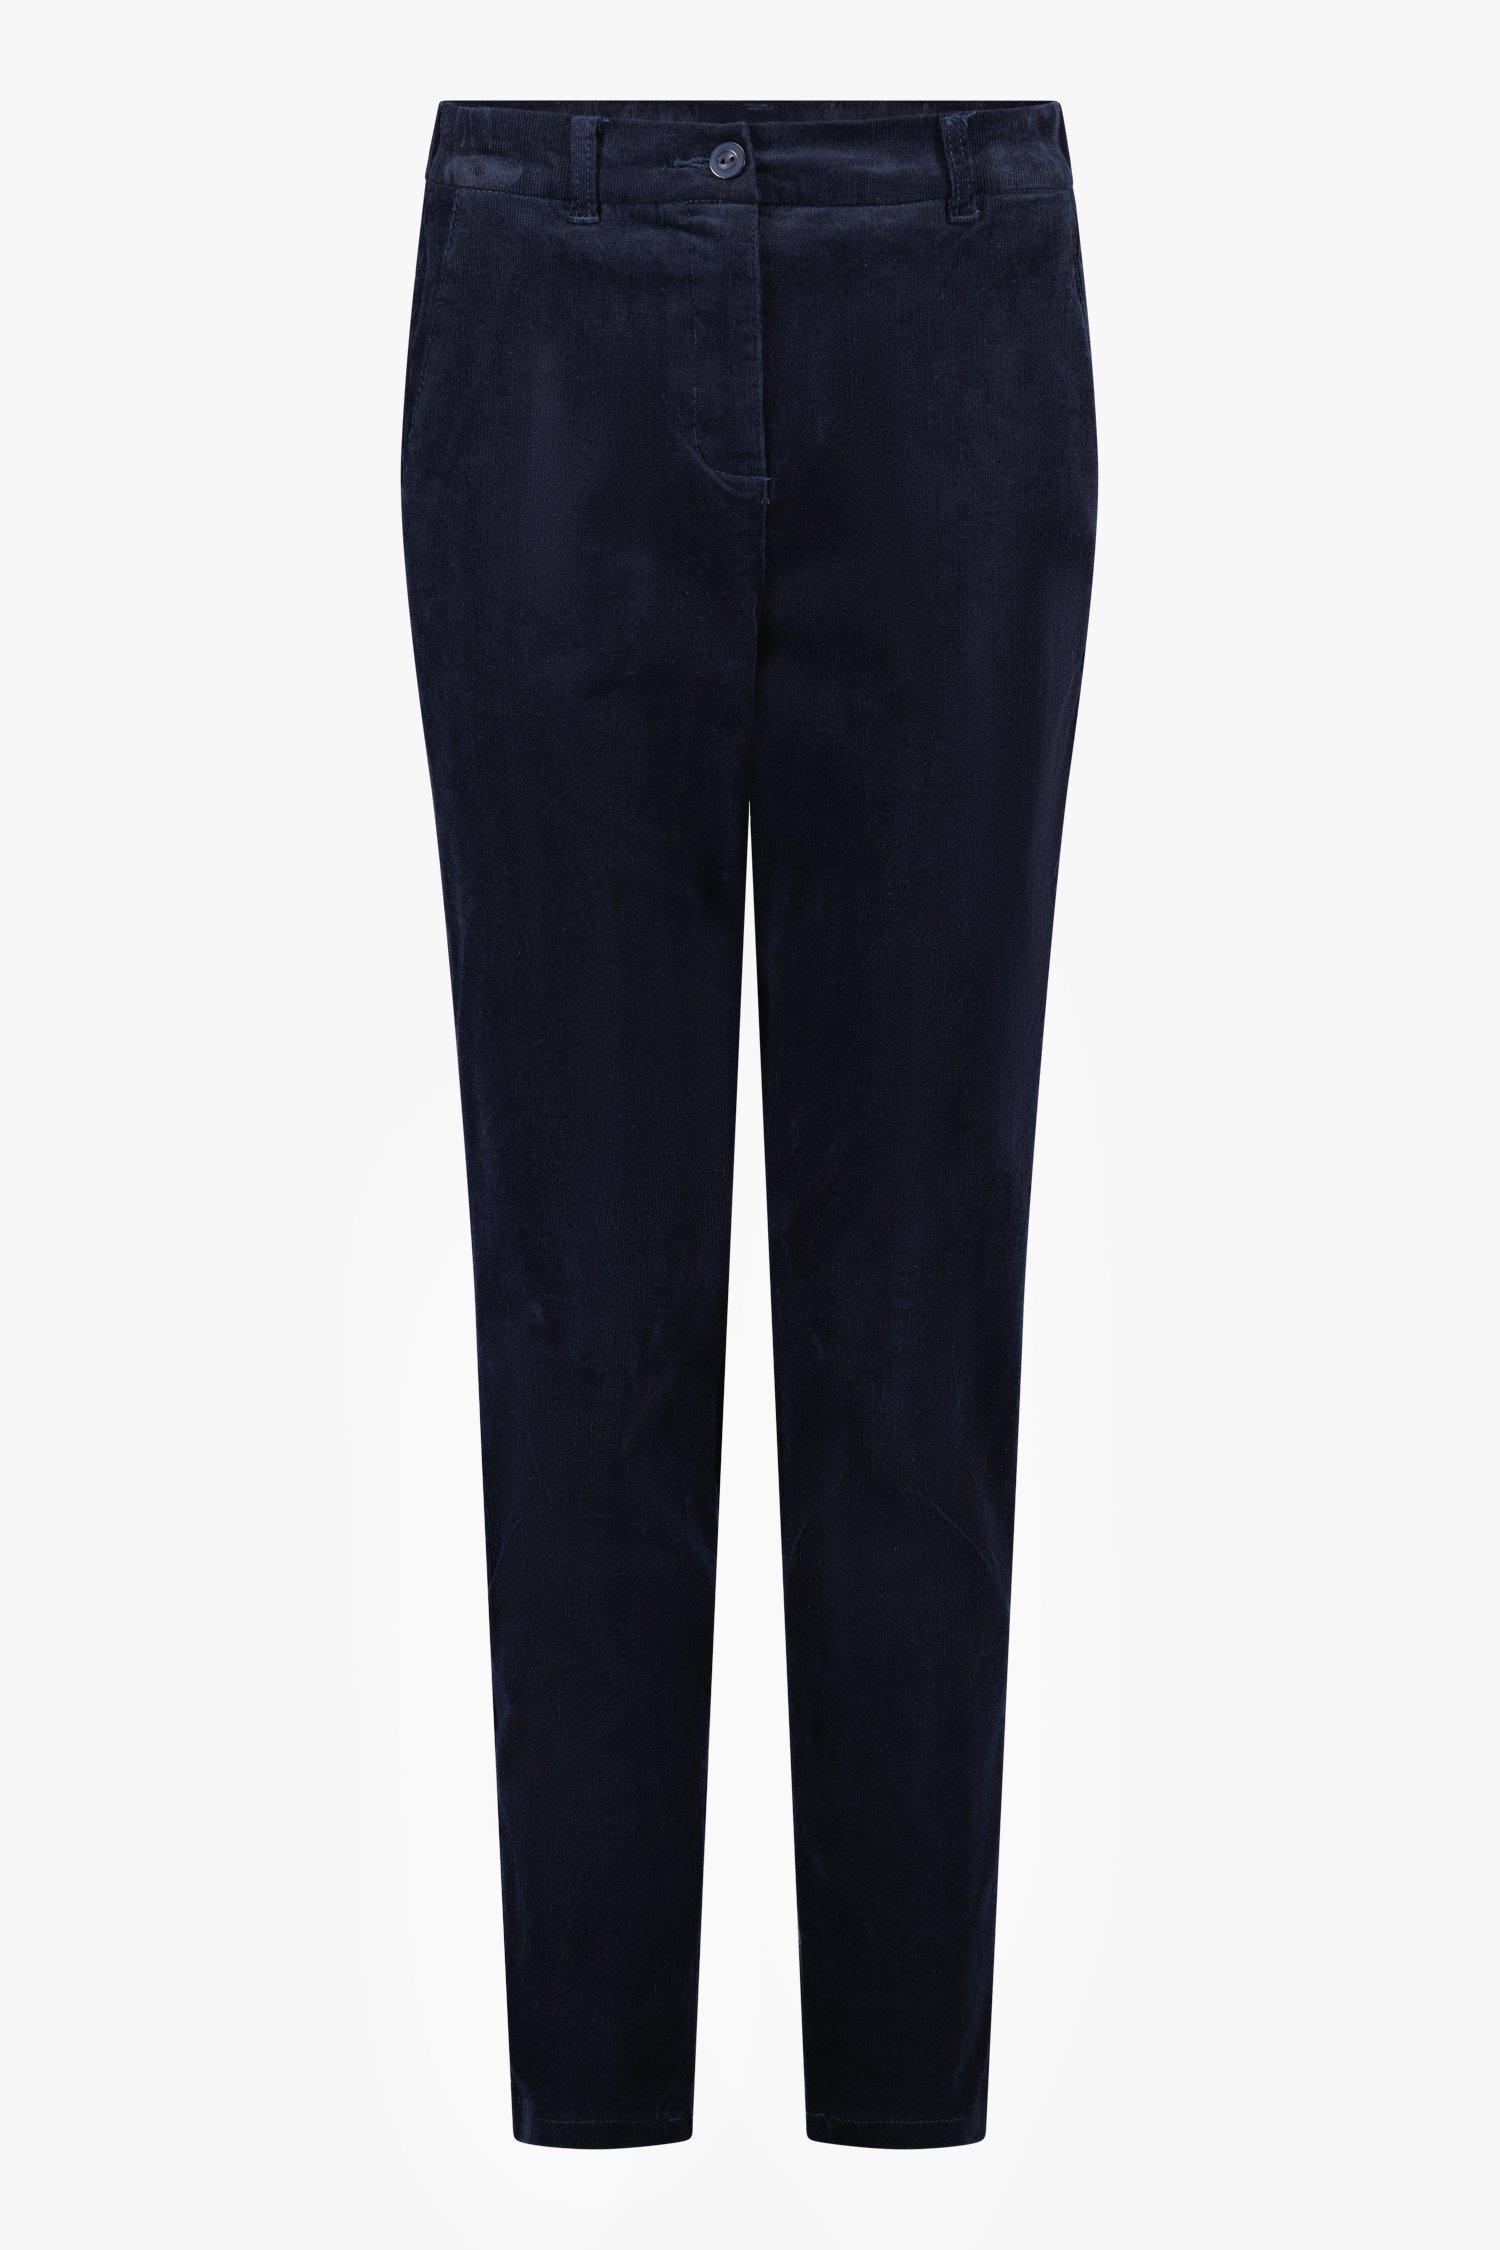 Donkerblauwe broek in ribluweel - slim fit van Signature voor Dames